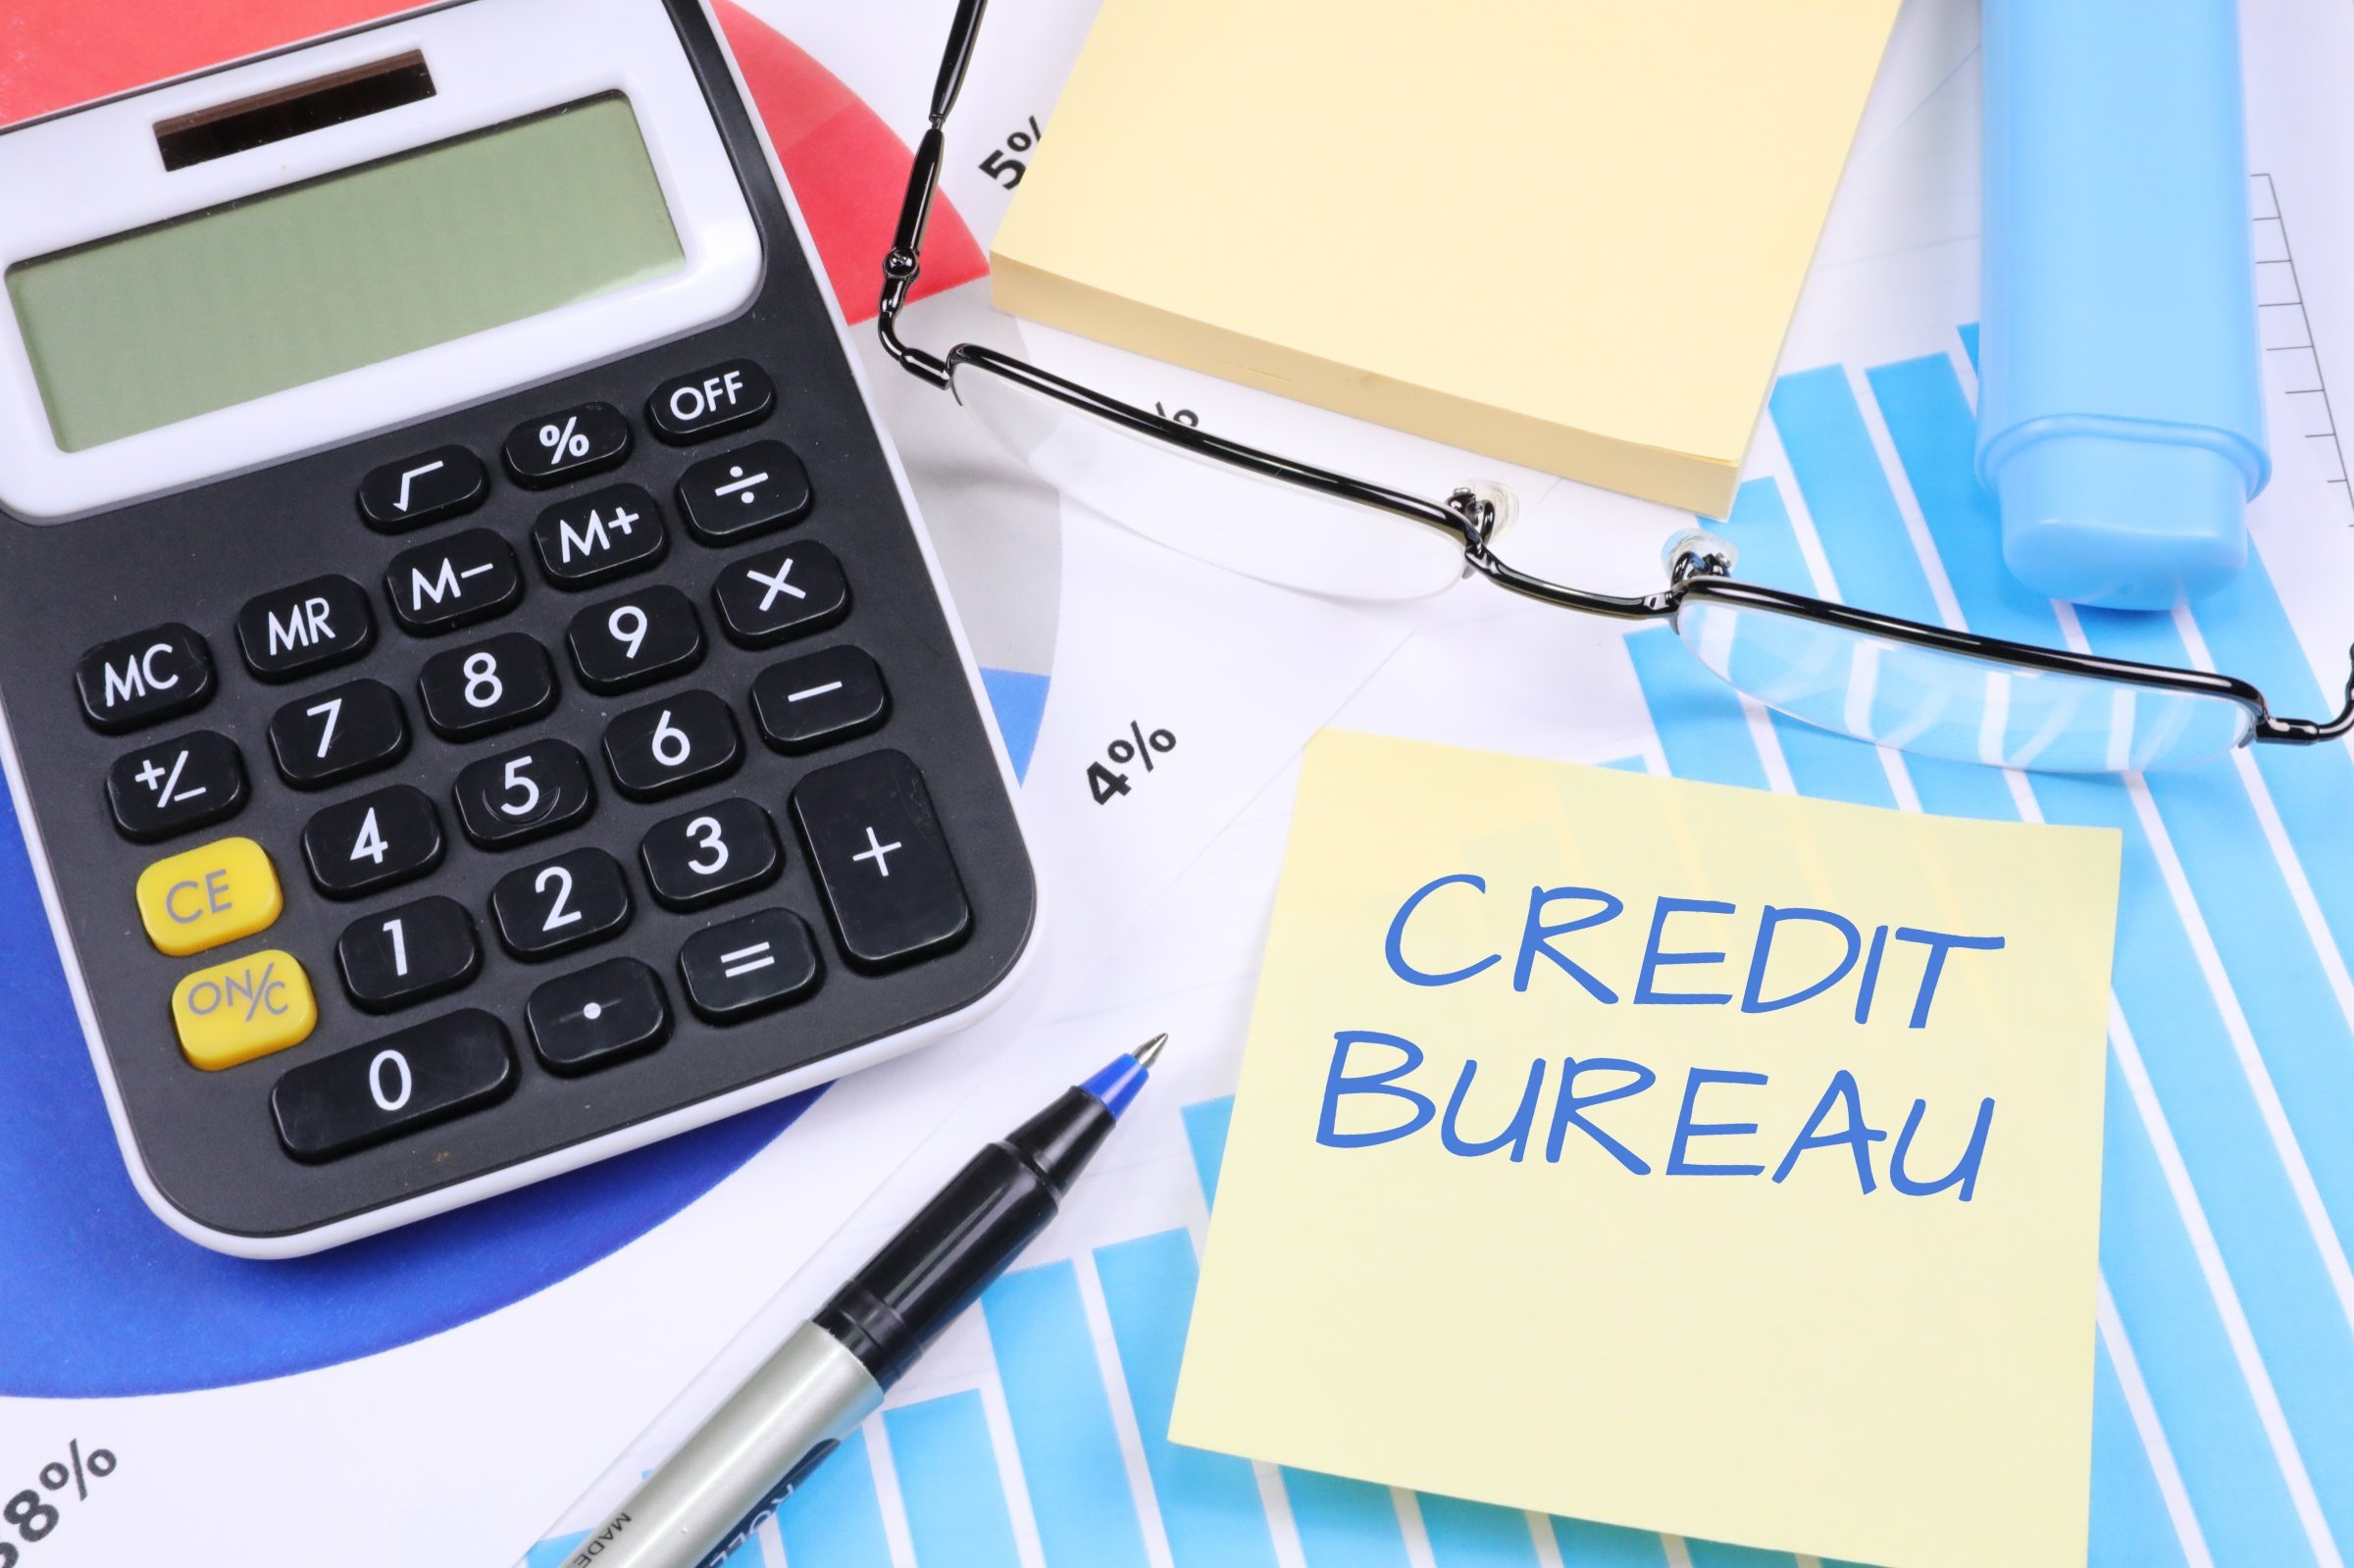 Credit Bureau